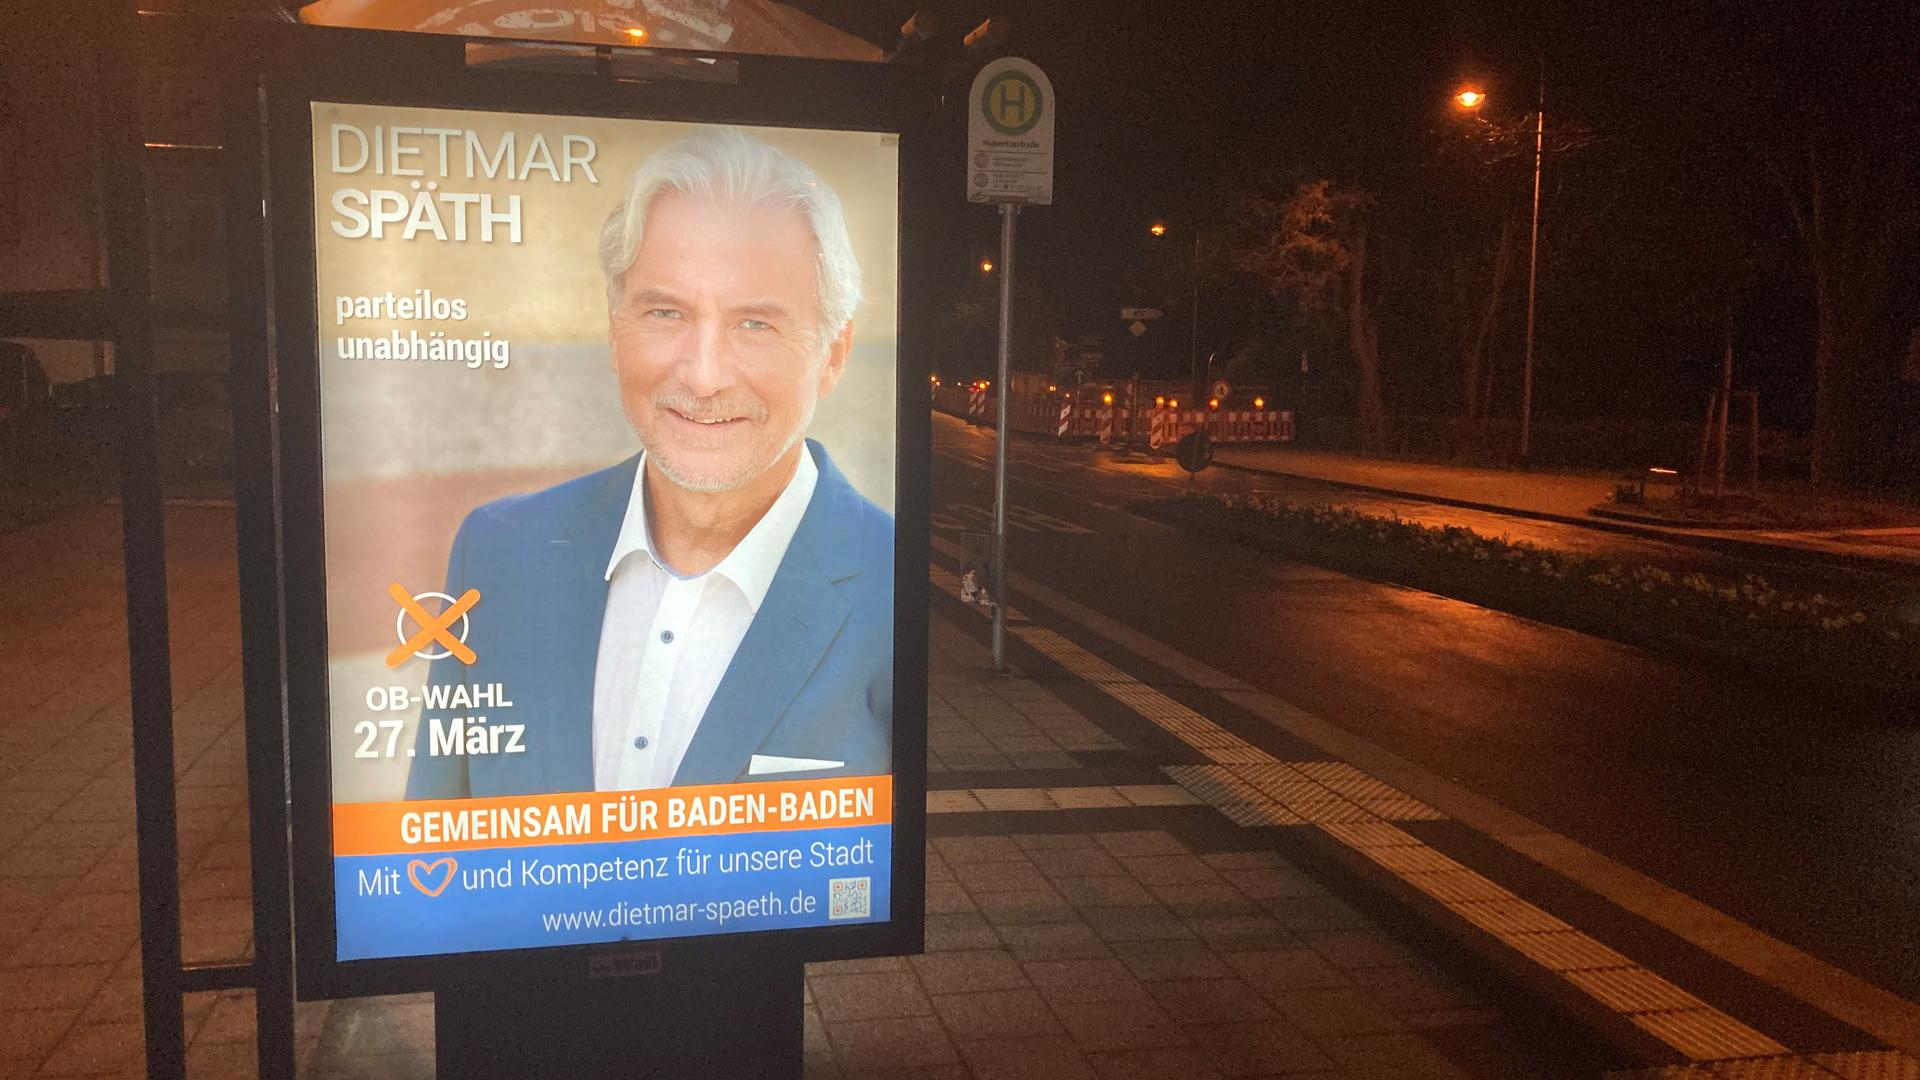 Hell und dunkel: OB-Bewerber Dietmar Späth leuchtet nachts an Haltestellen – eine eher düstere Kampagne gegen ihn rollt durch die sozialen Medien.